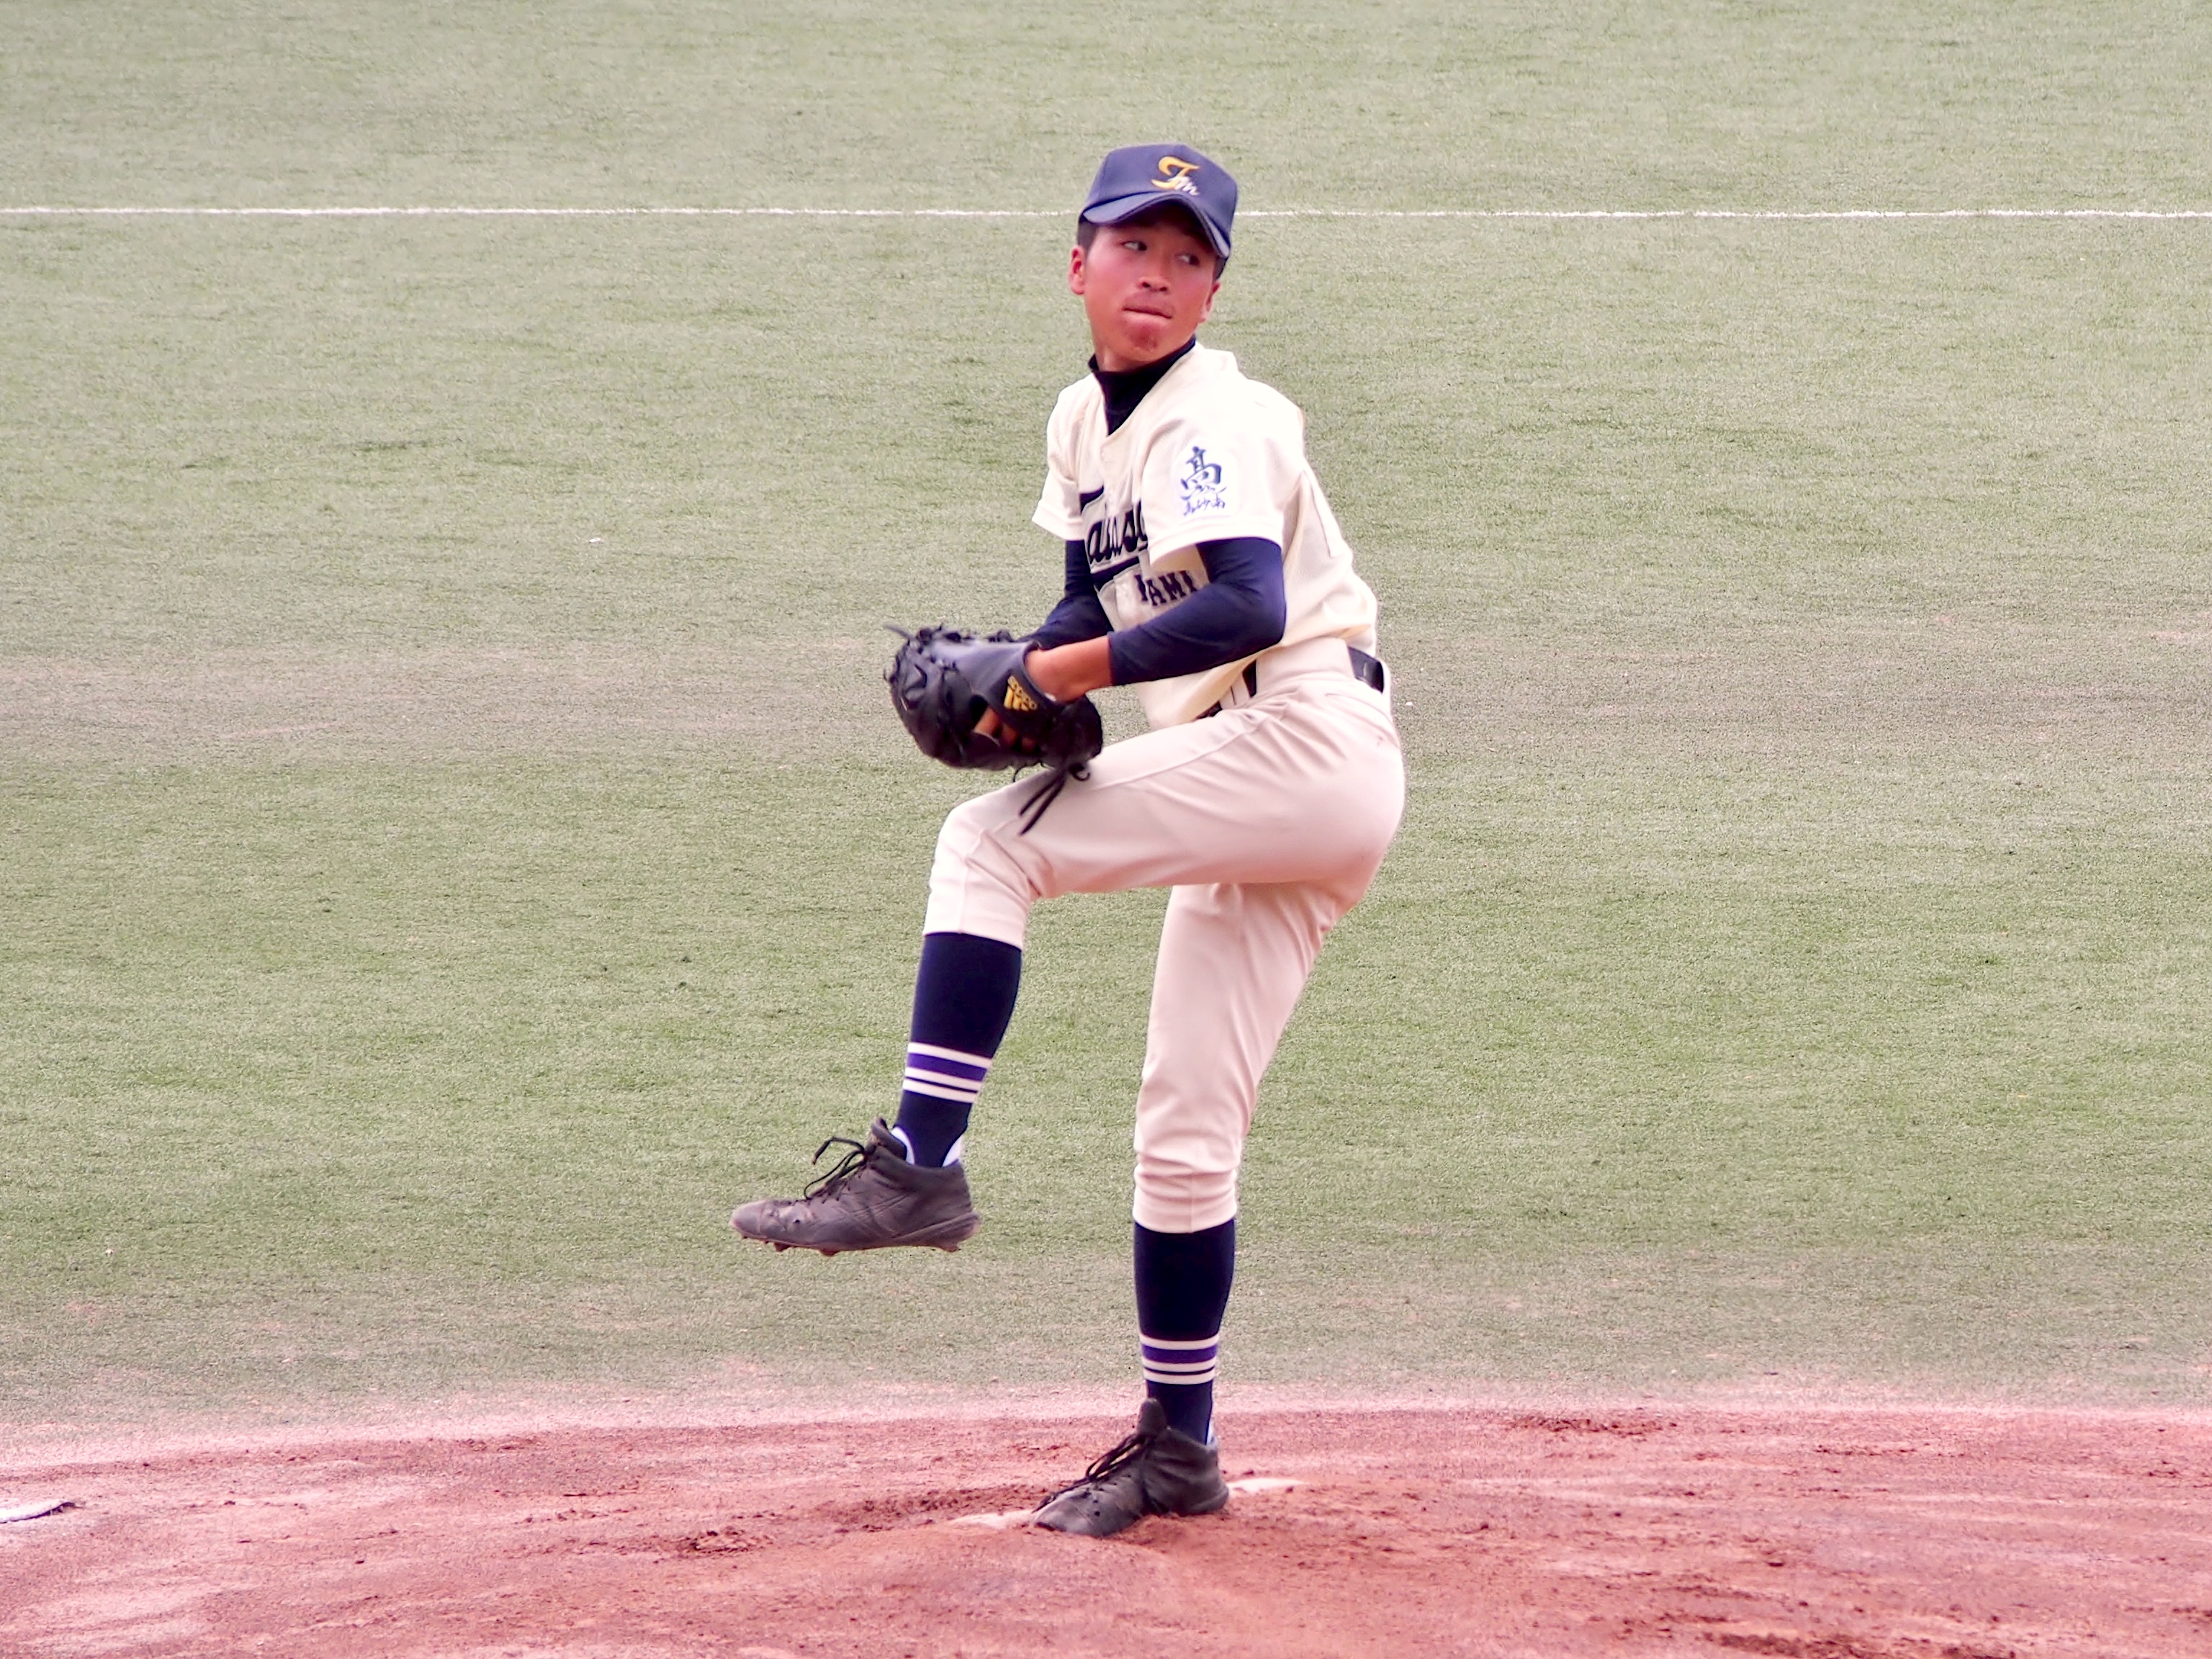 川合慎磨（かわい・しんま）・・・2002年生まれ。兵庫県高砂市出身。高砂南3年。168cm60kg。右投左打。投手。